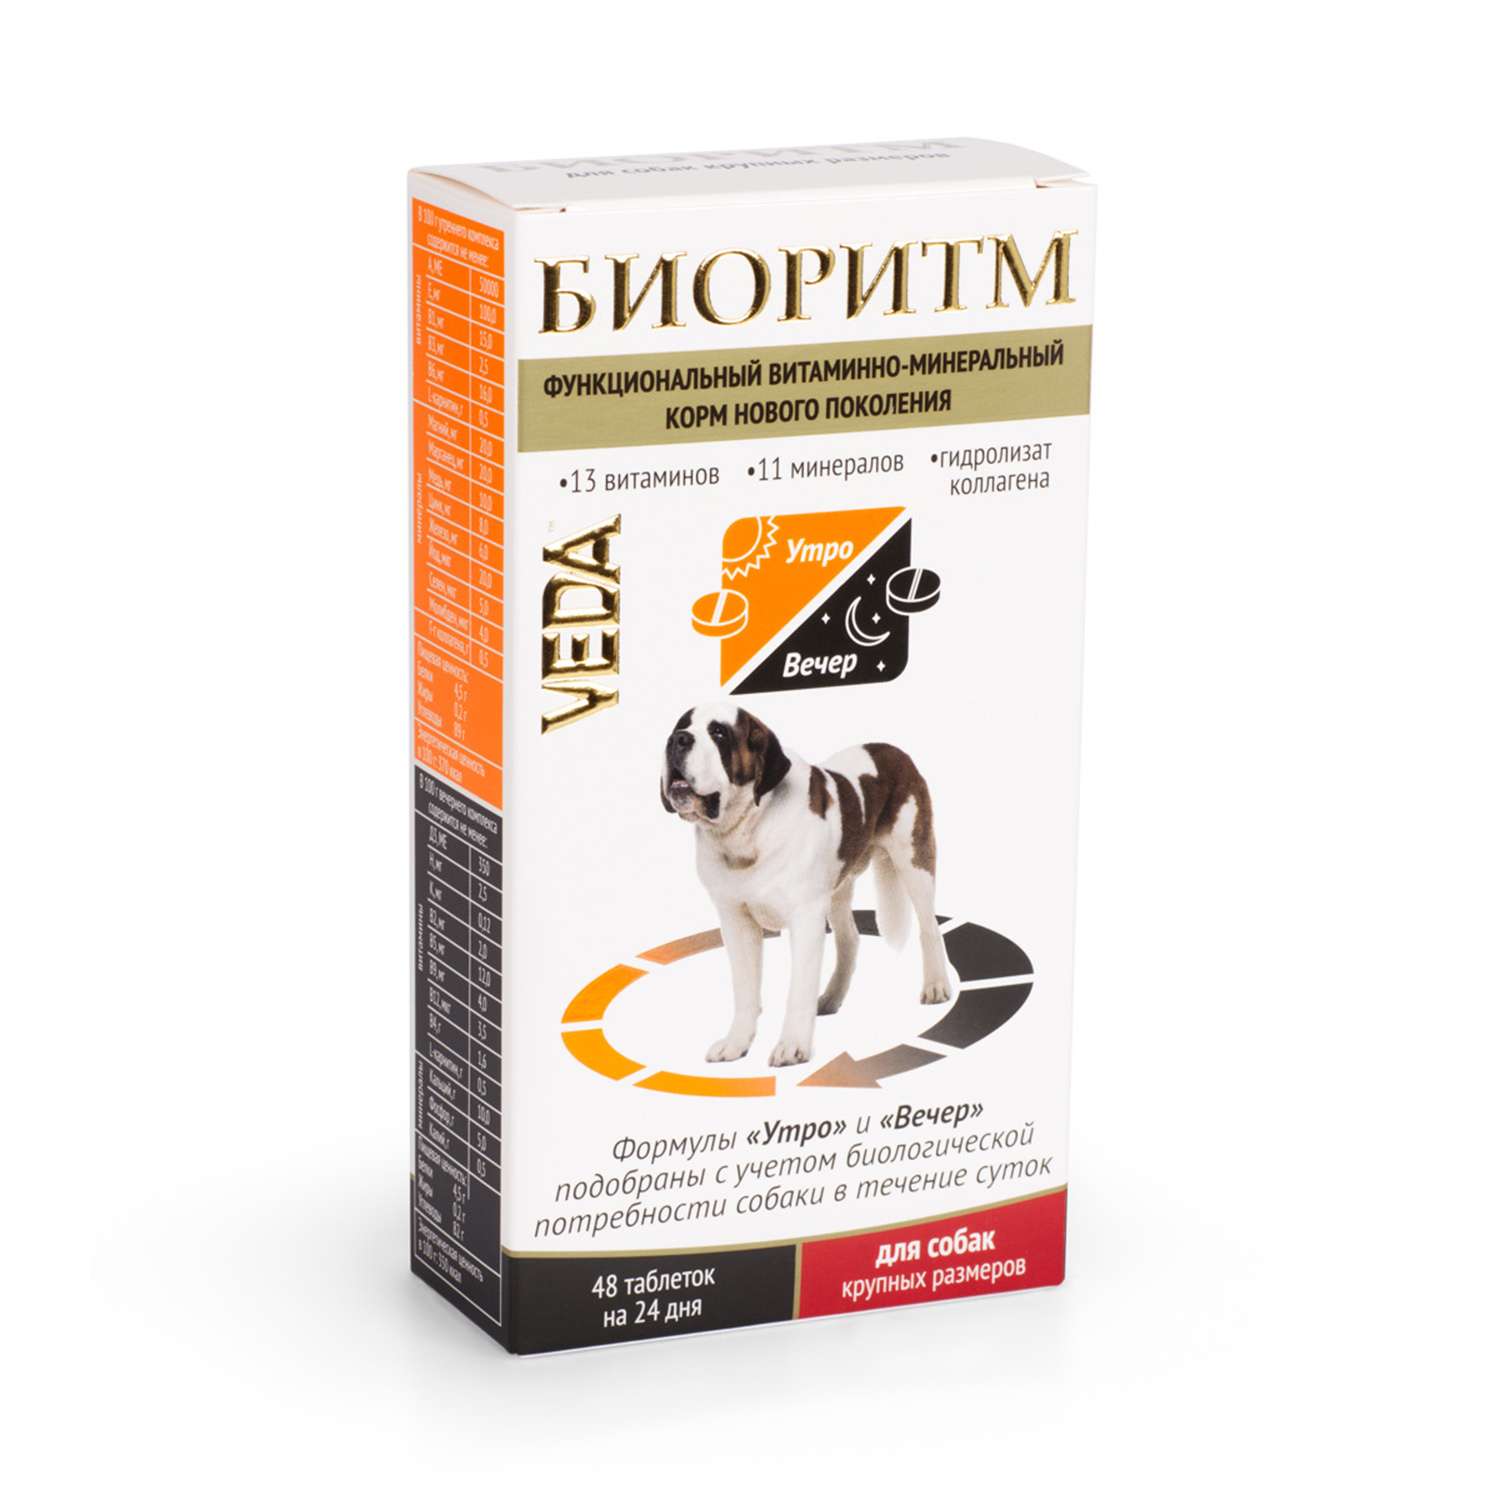 Комплекс для собак Veda Биоритм крупных пород витаминно-минеральный 48таблеток - фото 1